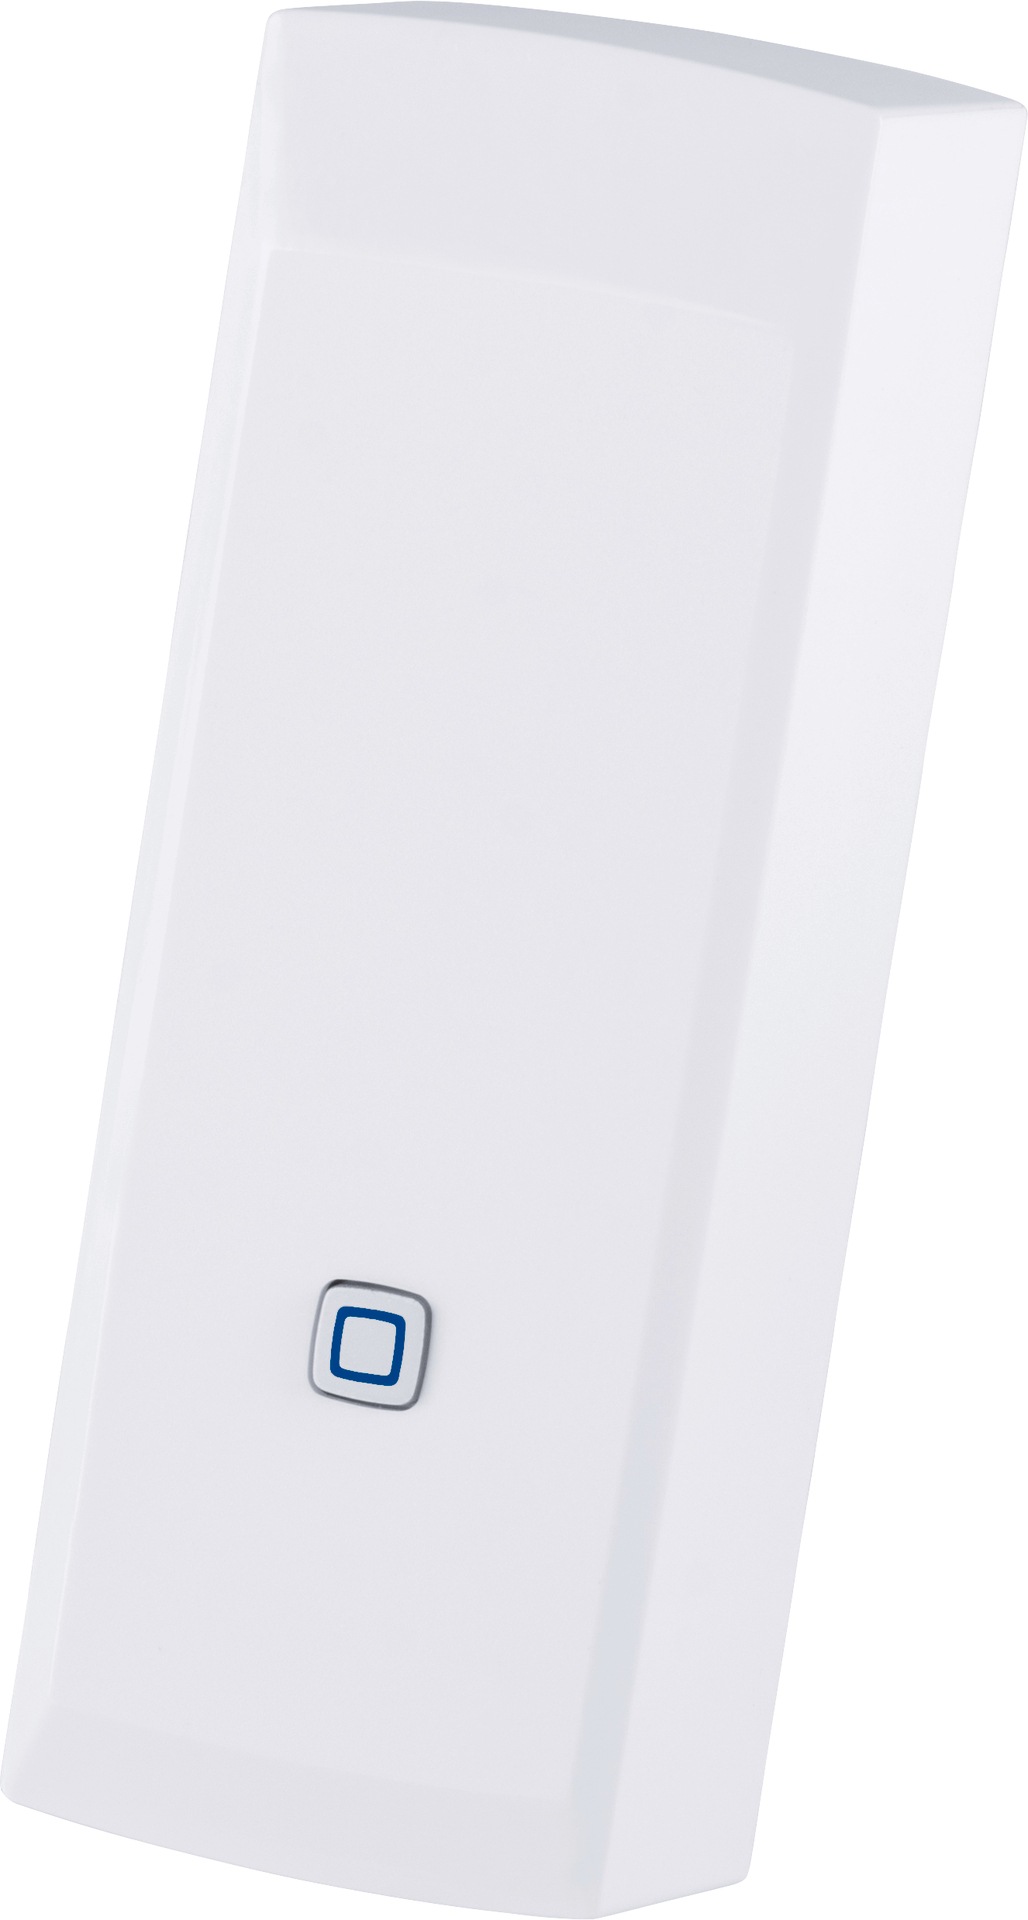 Homematic IP Smart-Home-Zubehör »Schnittstelle für Gaszähler«